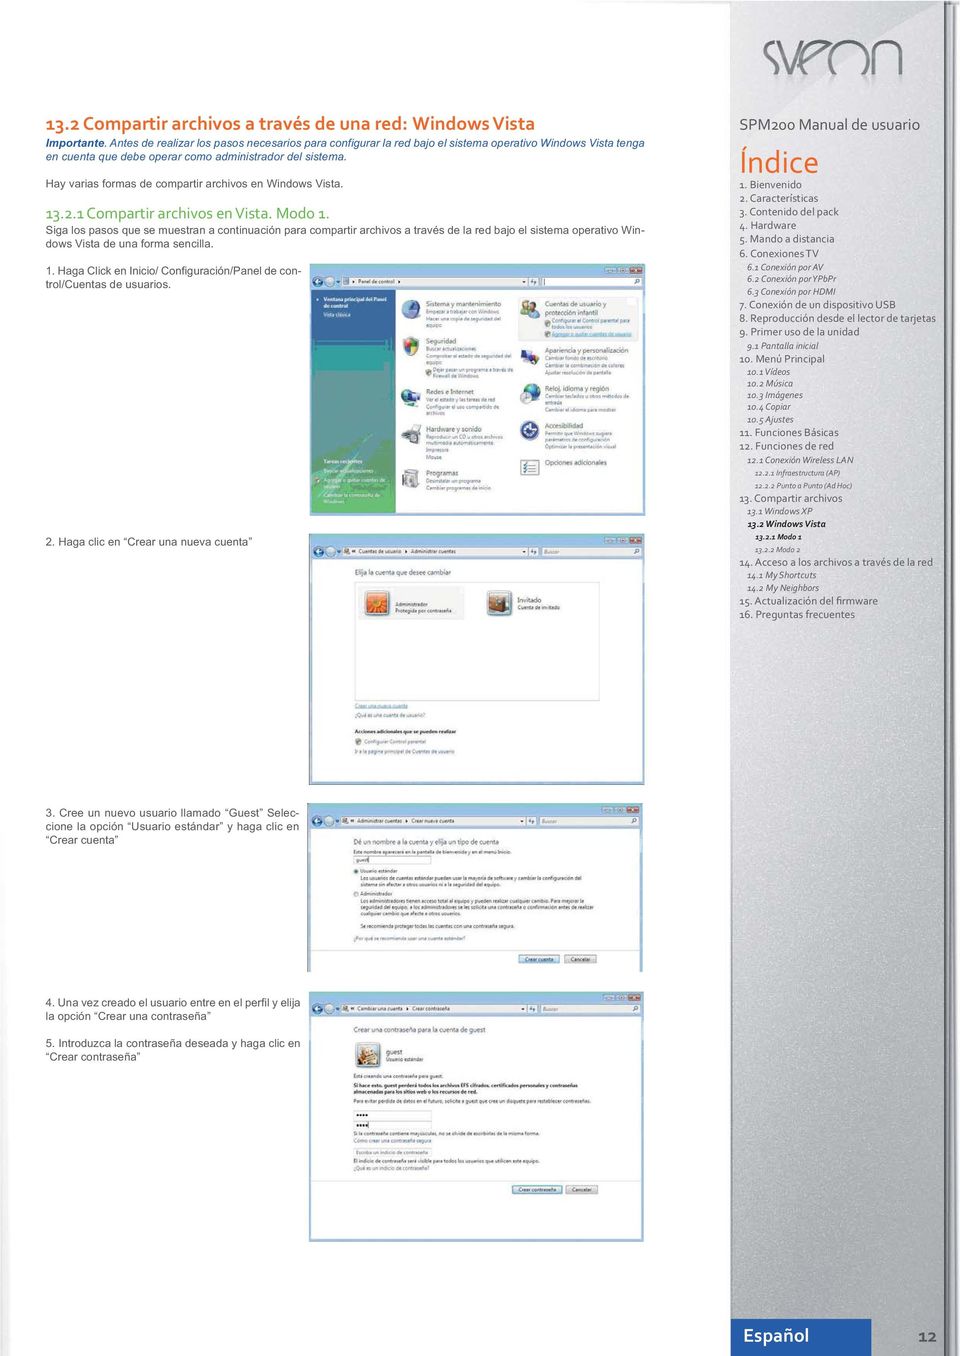 Hay varias formas de compartir archivos en Windows Vista. 13.2.1 Compartir archivos en Vista. Modo 1.